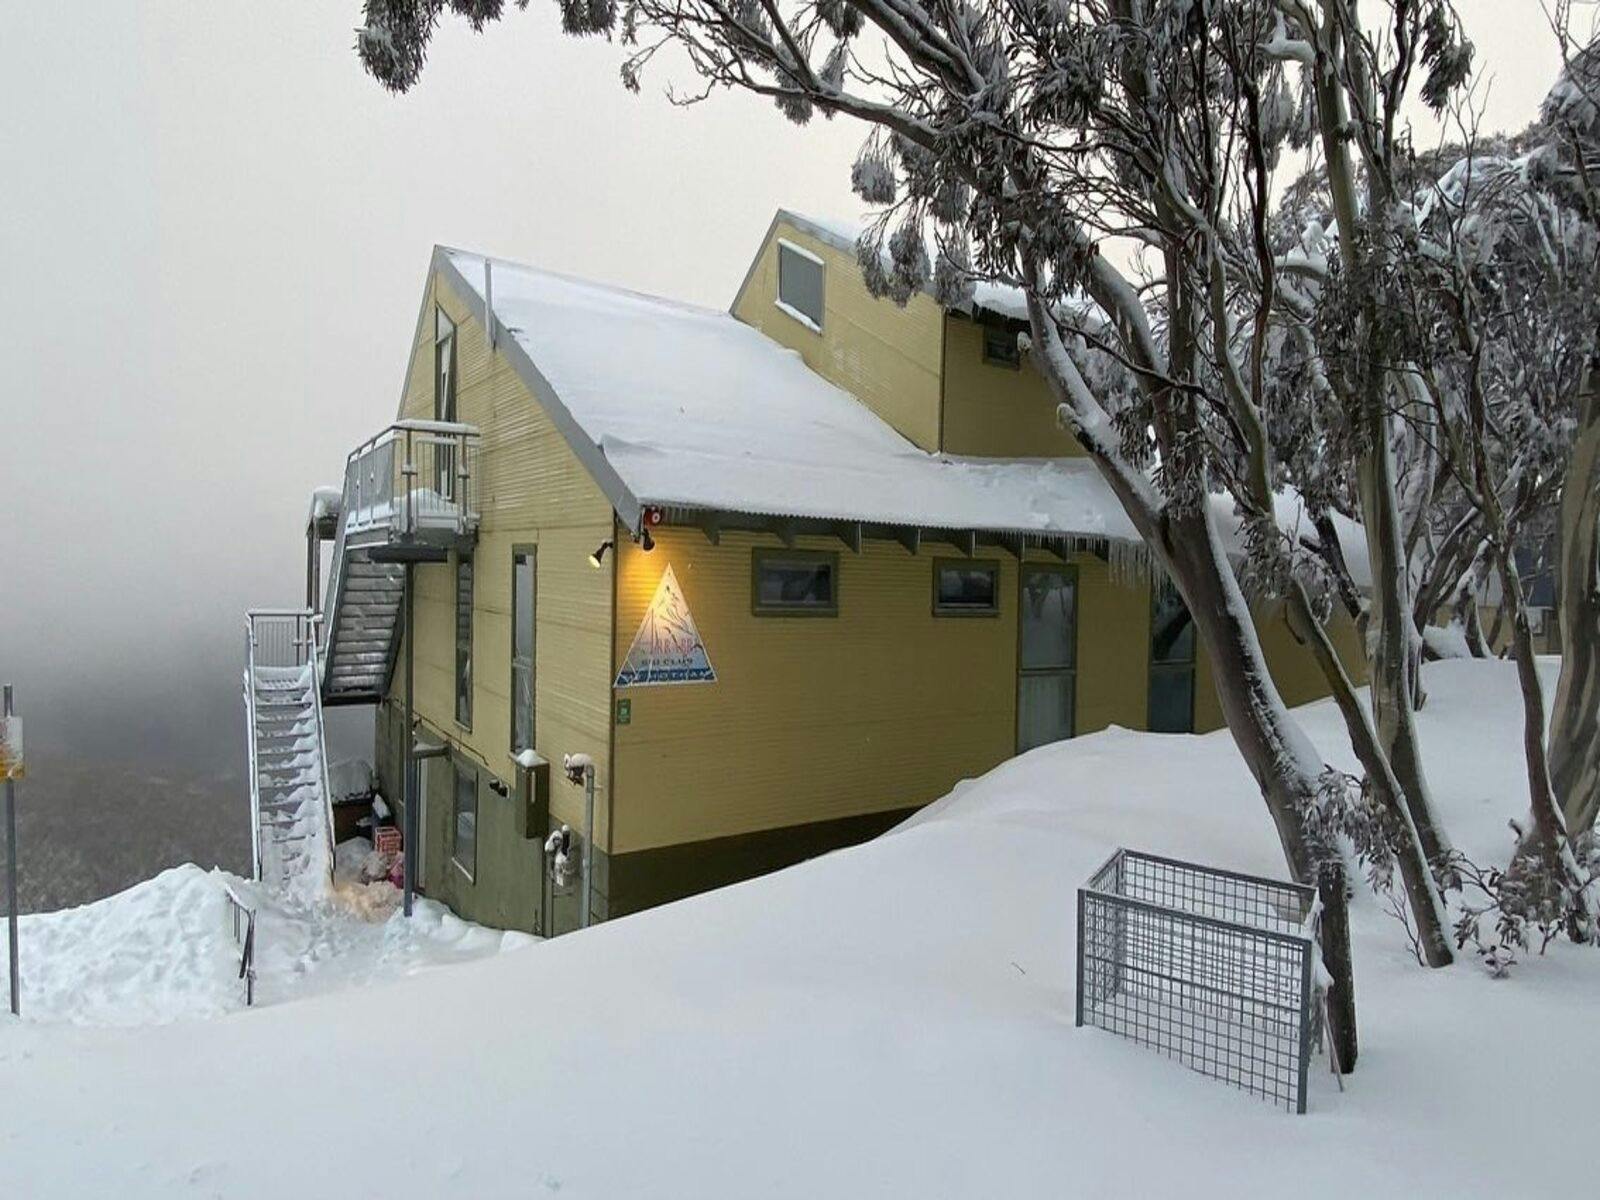 arrabri ski club mt Hotham image from outside